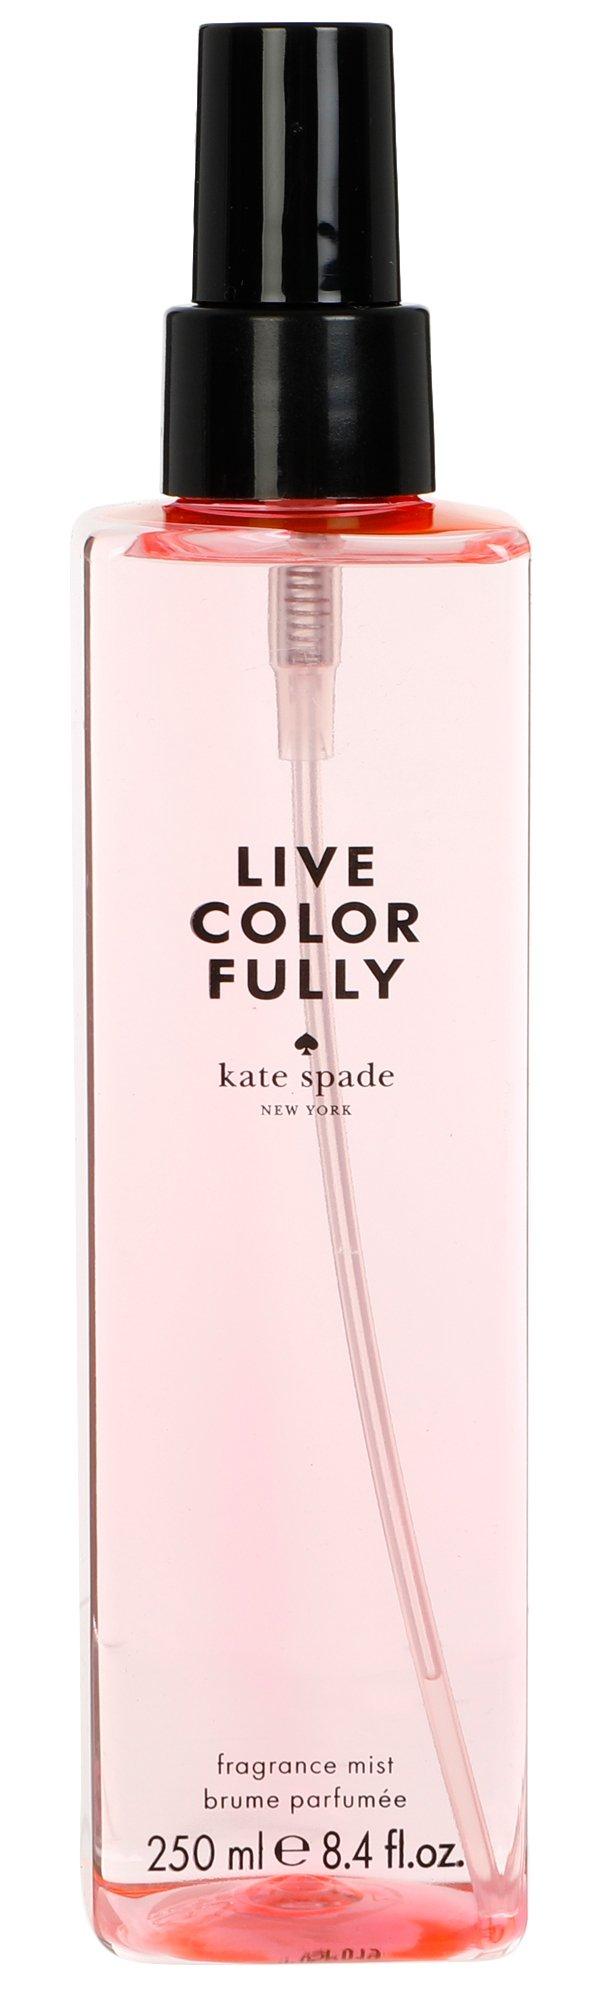 8.4 oz Live Color Fully Fragrance Mist For Her